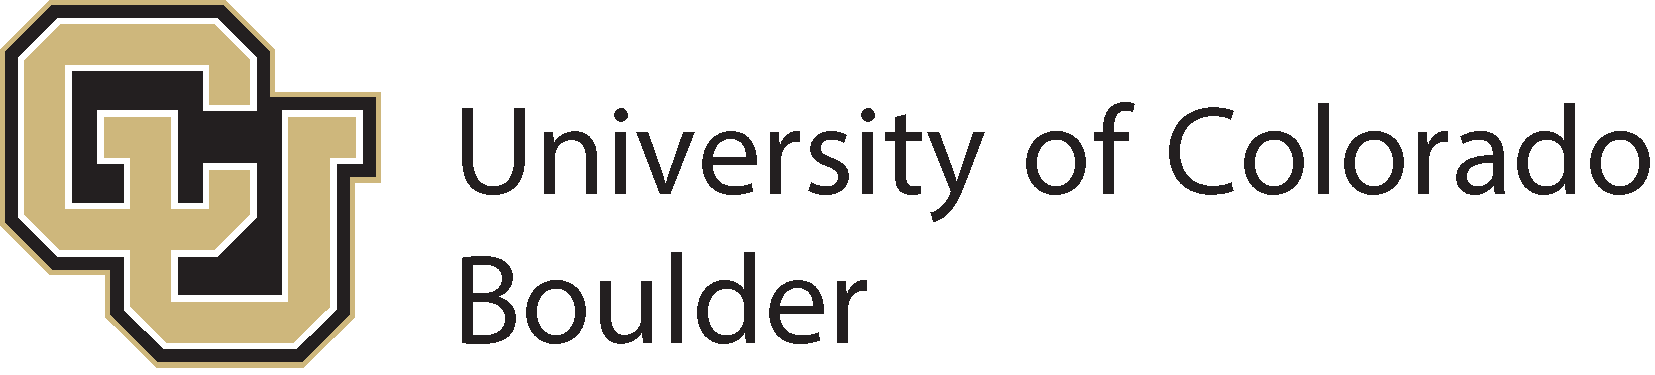 コロラド大学ボールダーのロゴ (CU ボールダー) - SVG、PNG、AI、EPS ...